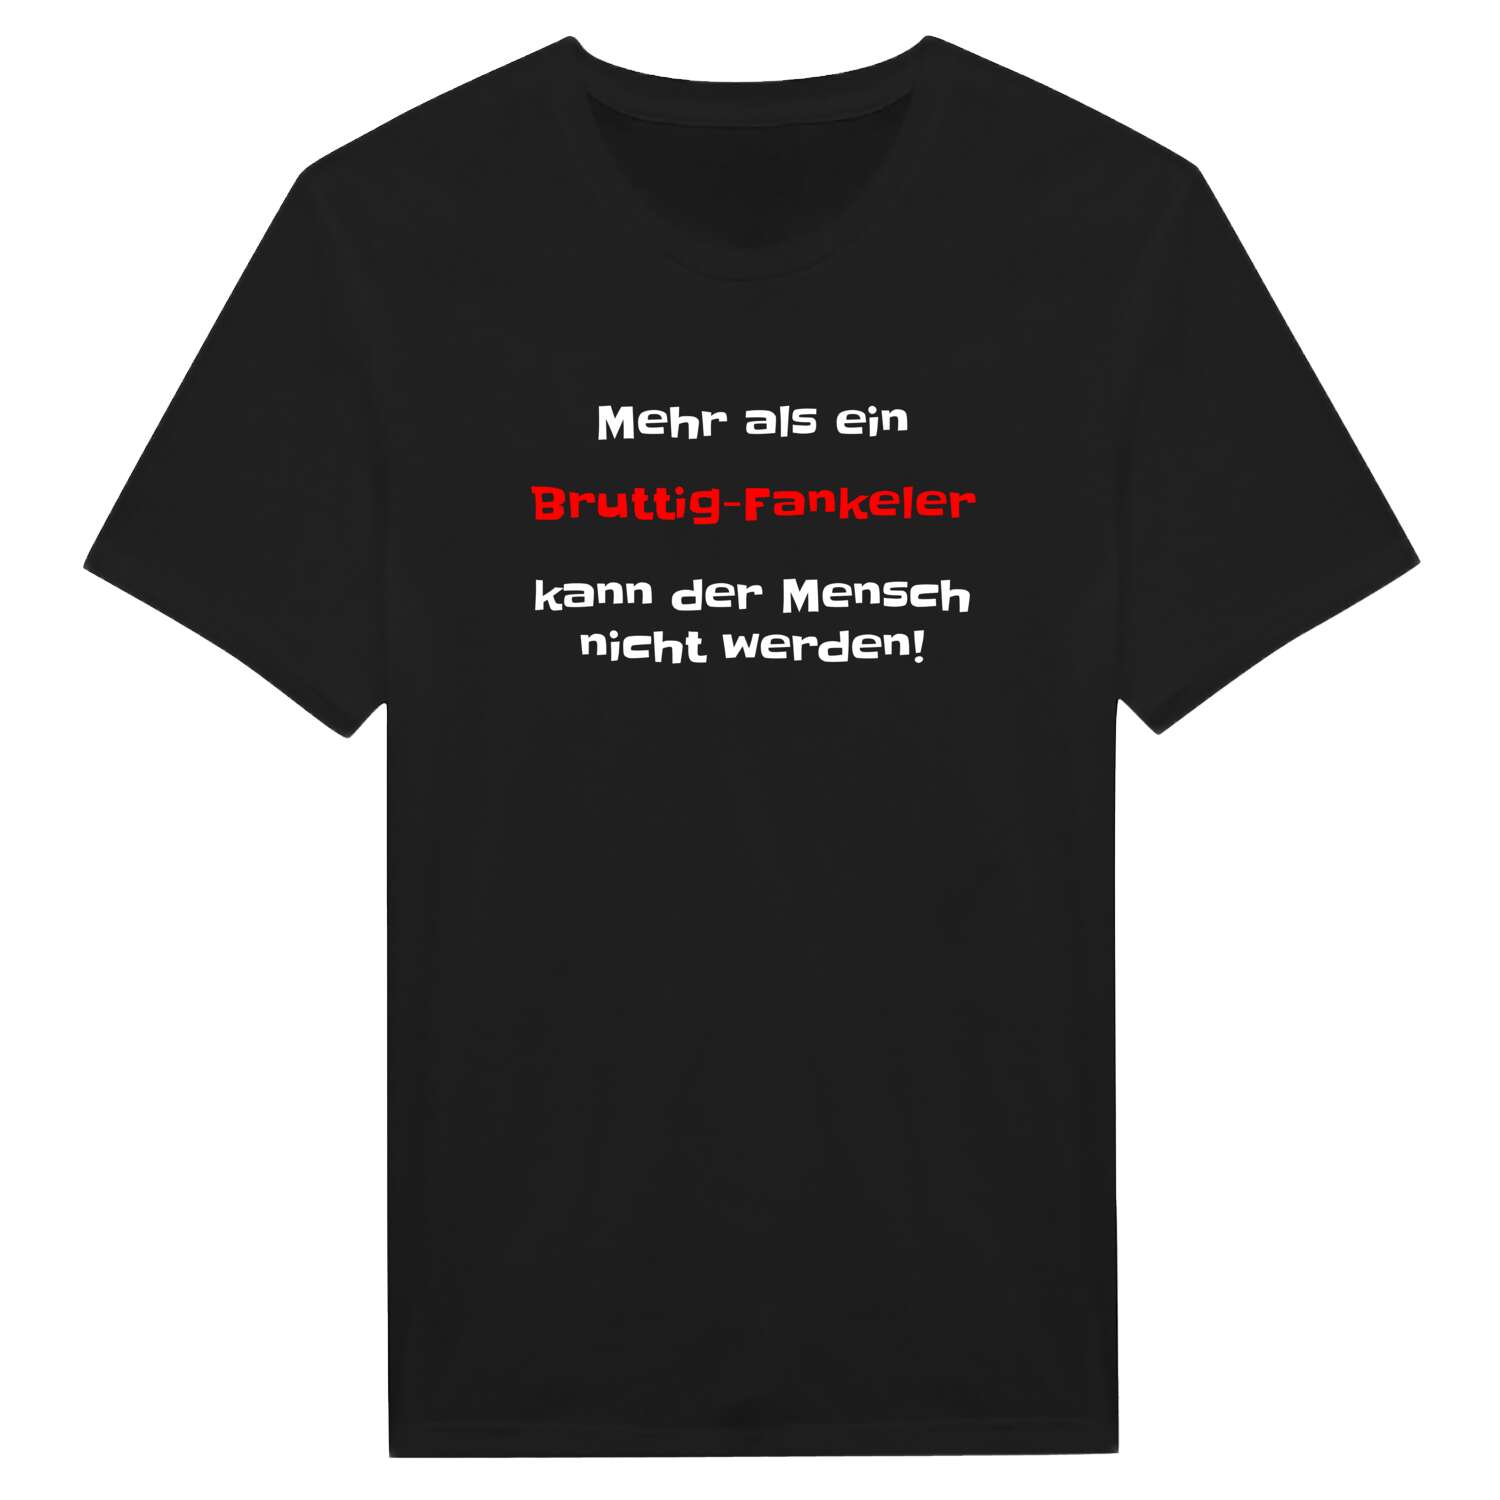 Bruttig-Fankel T-Shirt »Mehr als ein«